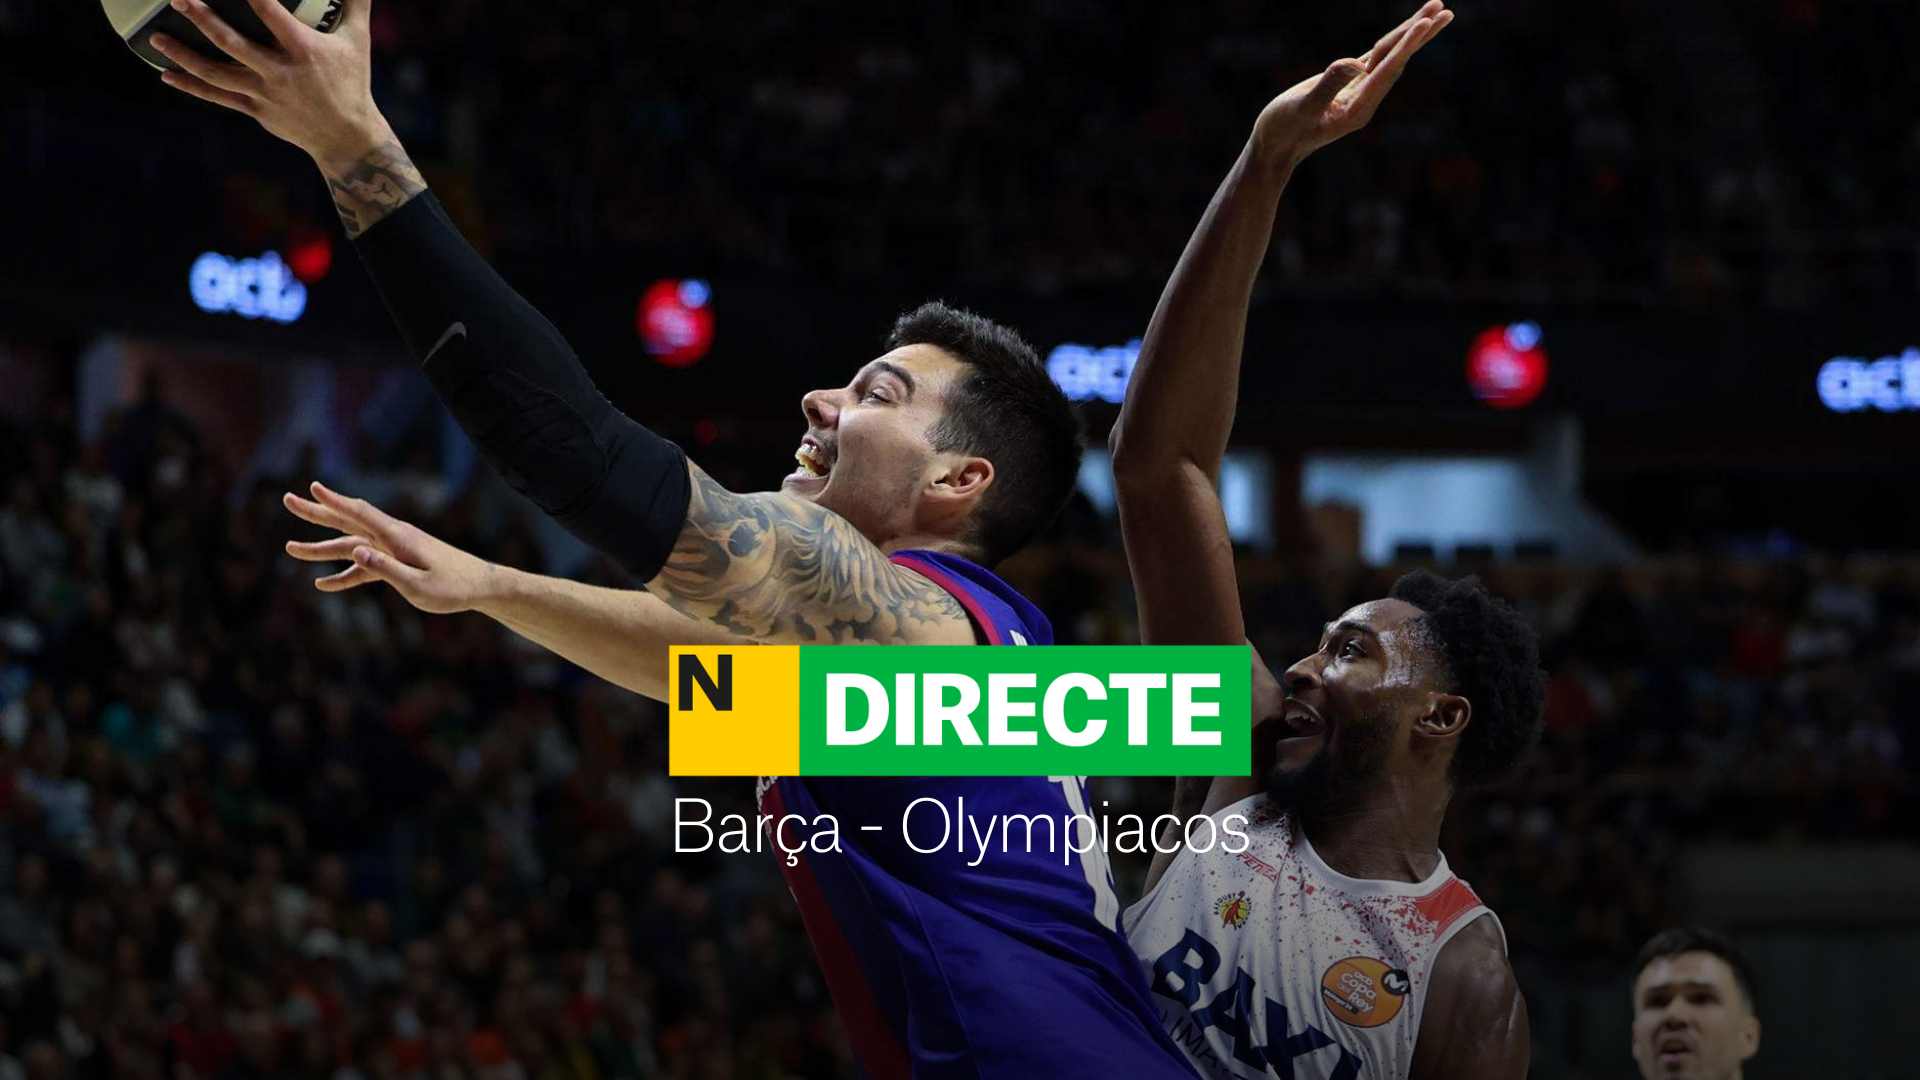 Barça - Olympiacos de la Euroliga de baloncesto, DIRECTO | Resultado y resumen